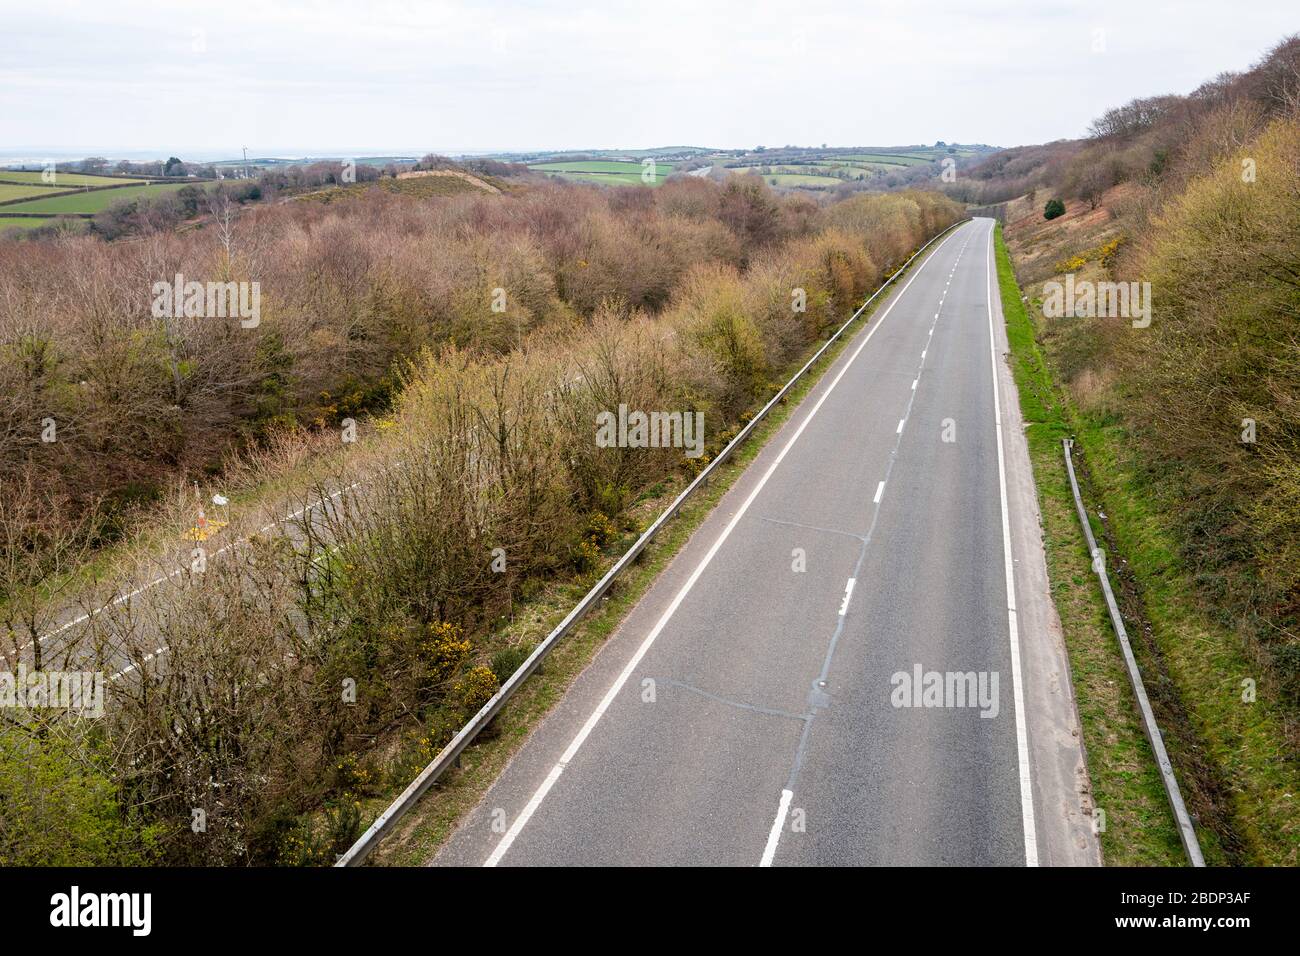 La route principale vide de l'A30 ne montre aucun trafic de vacances de printemps pour Cornwall dans le sud-ouest de l'Angleterre pendant les restrictions de voyage de COVID-19, avril 2020. Banque D'Images